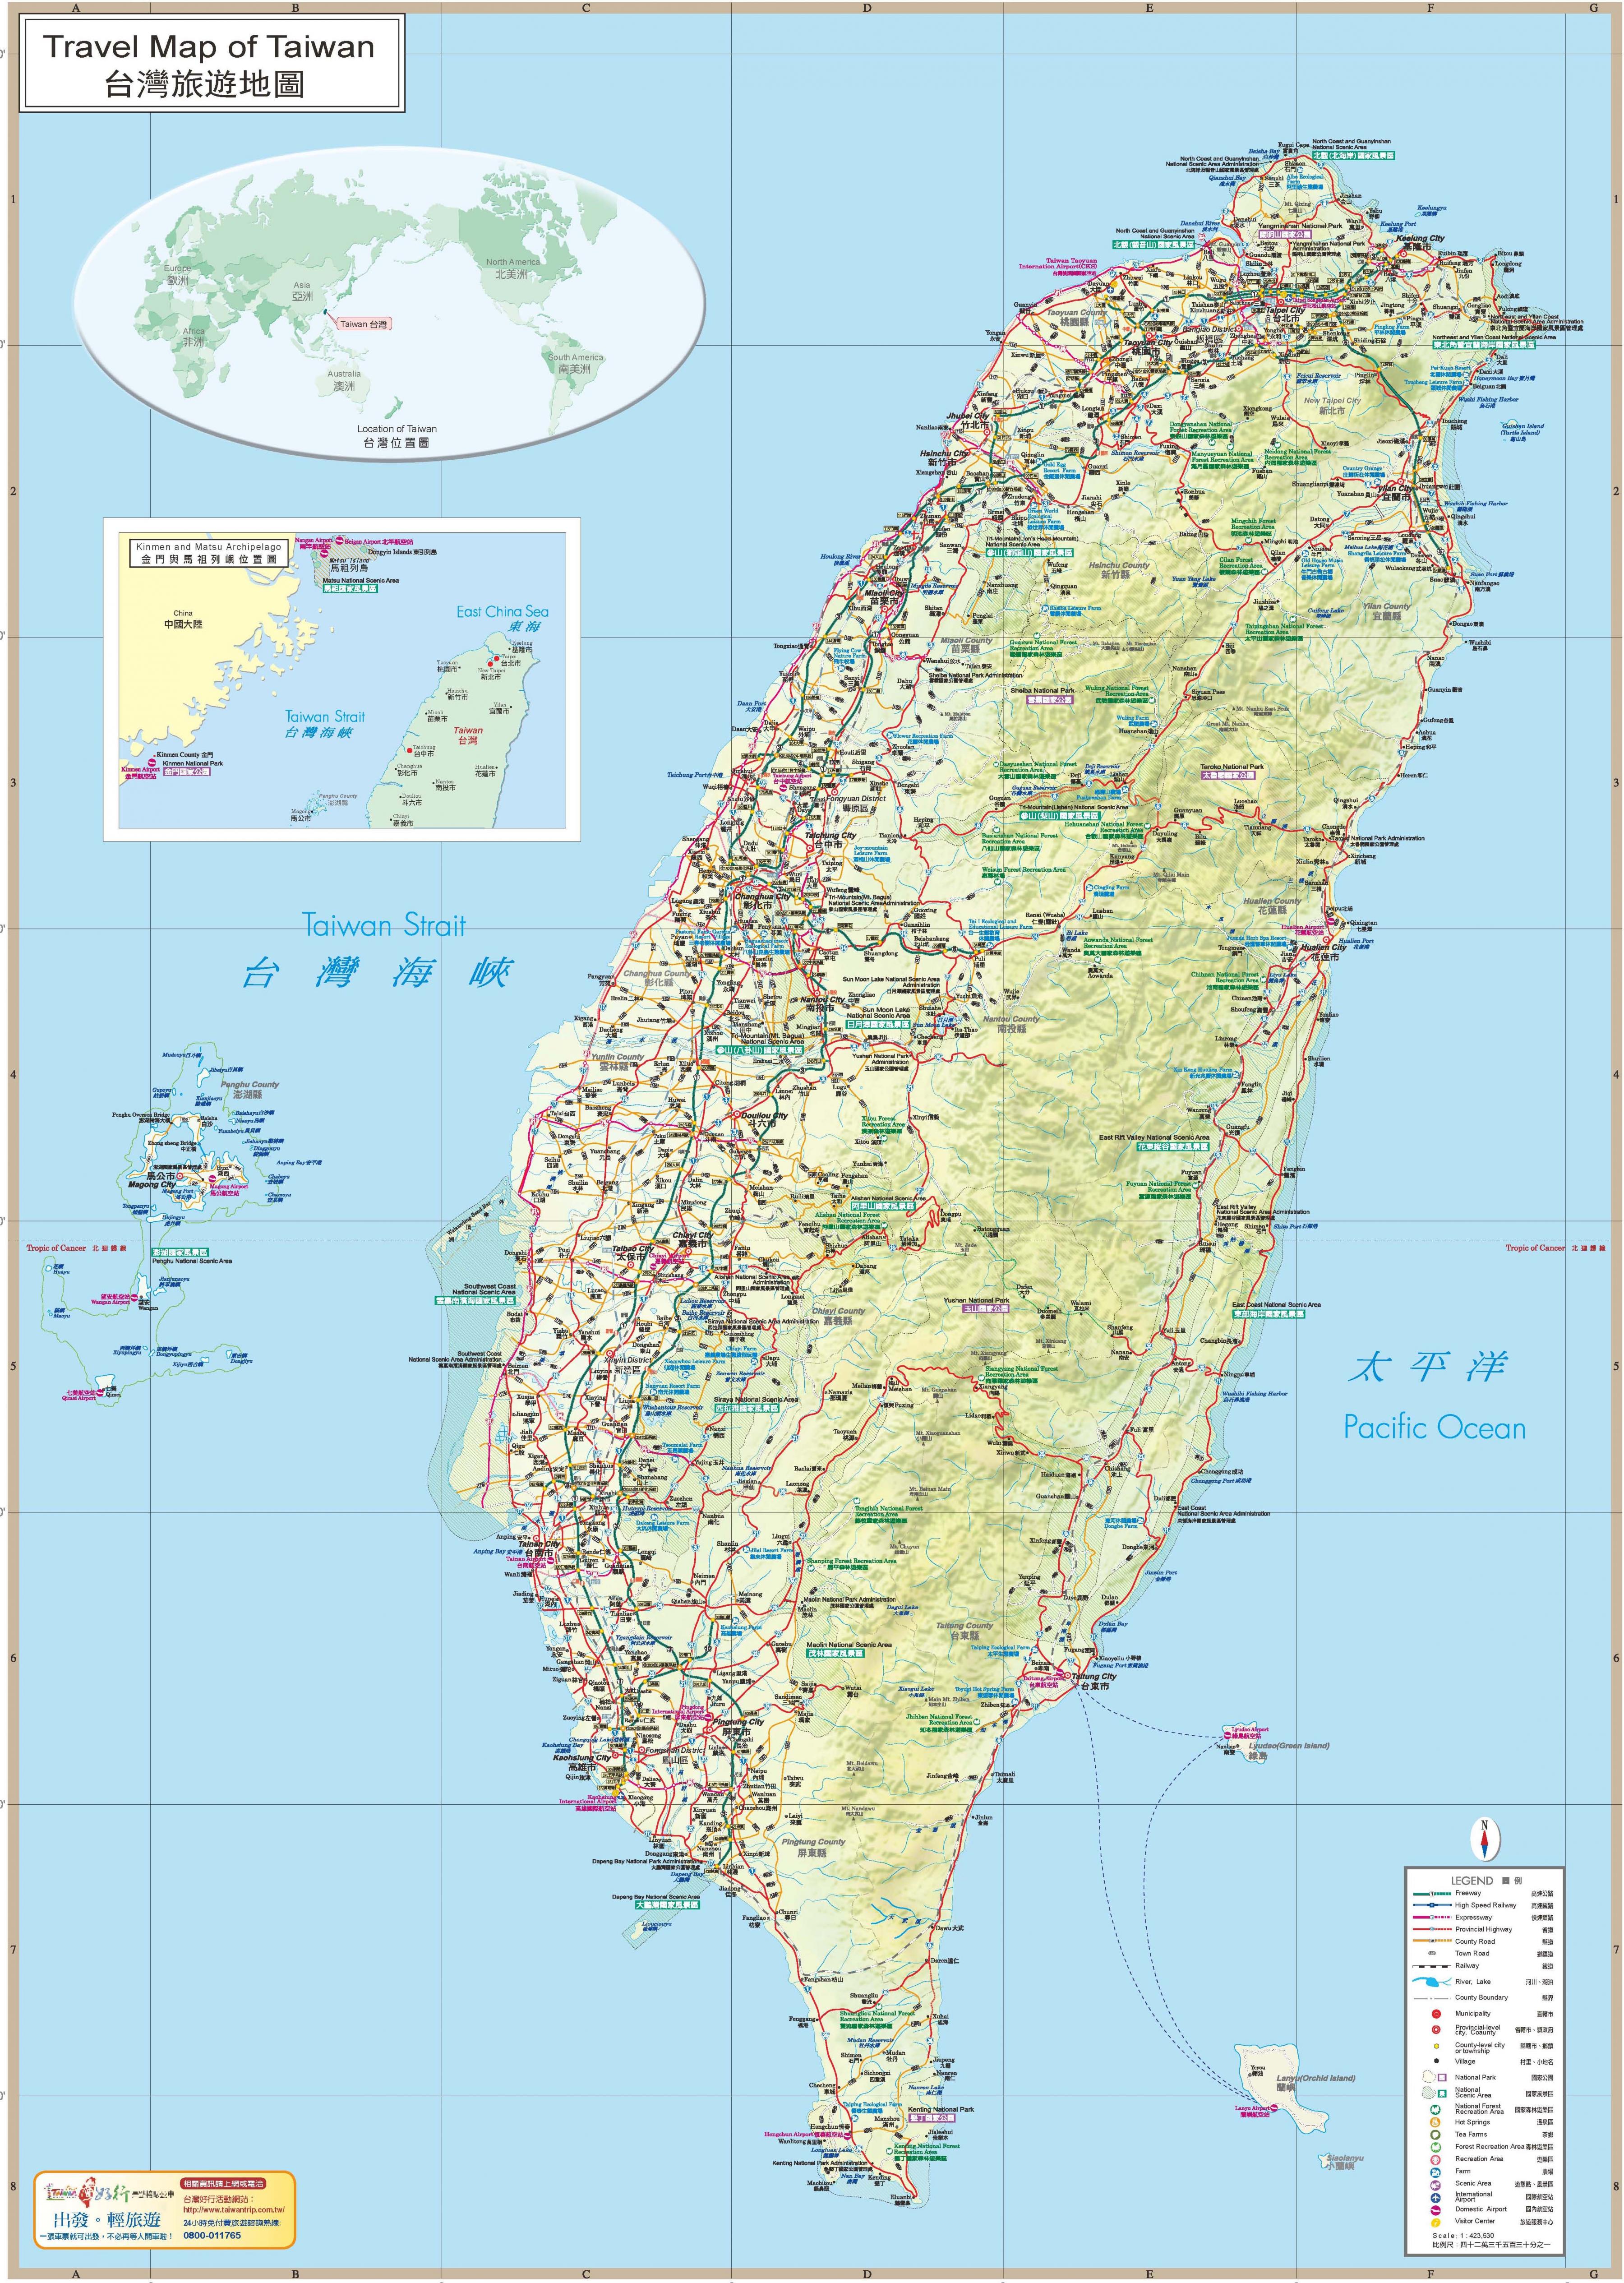 Taiwan travel map - Taiwan matkaopas kartta (Itä-Aasia - Aasia)